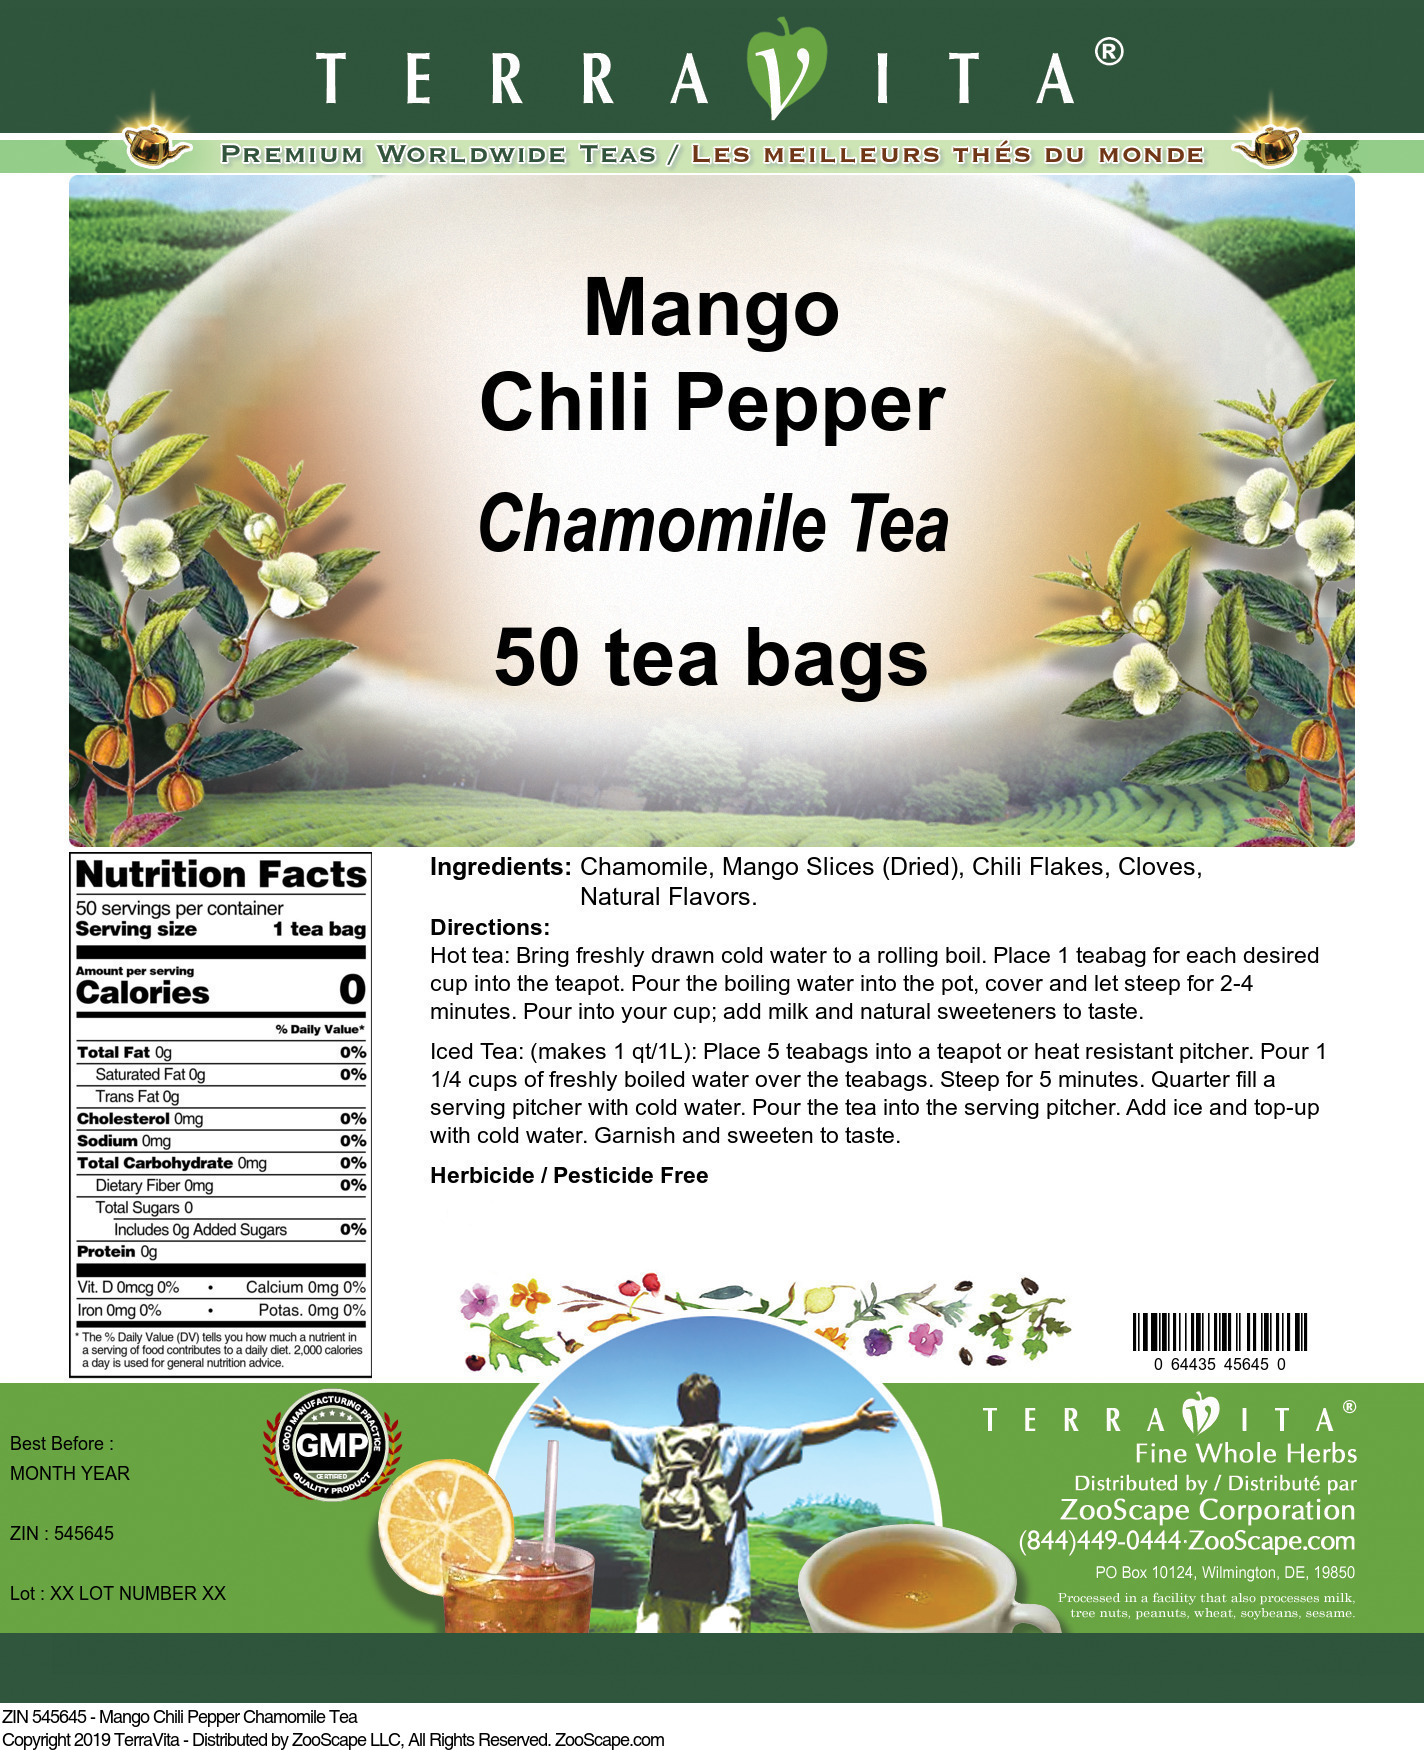 Mango Chili Pepper Chamomile Tea - Label